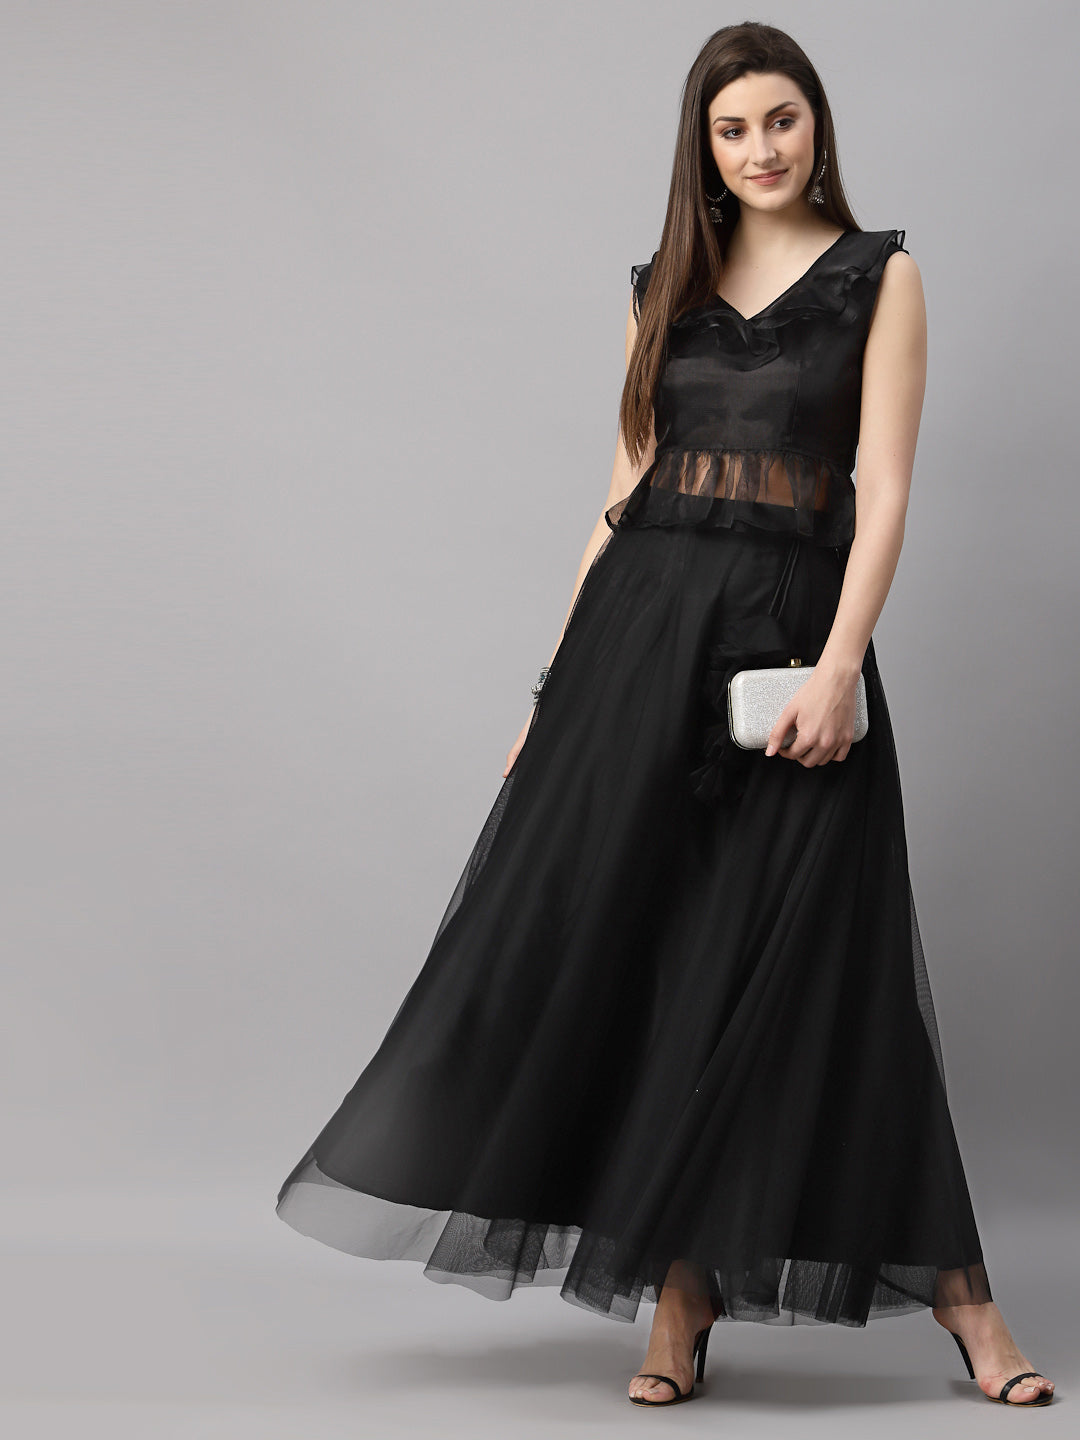 Váy Đầm - Black Illusion Neckline Midi Taffeta Dress(2)